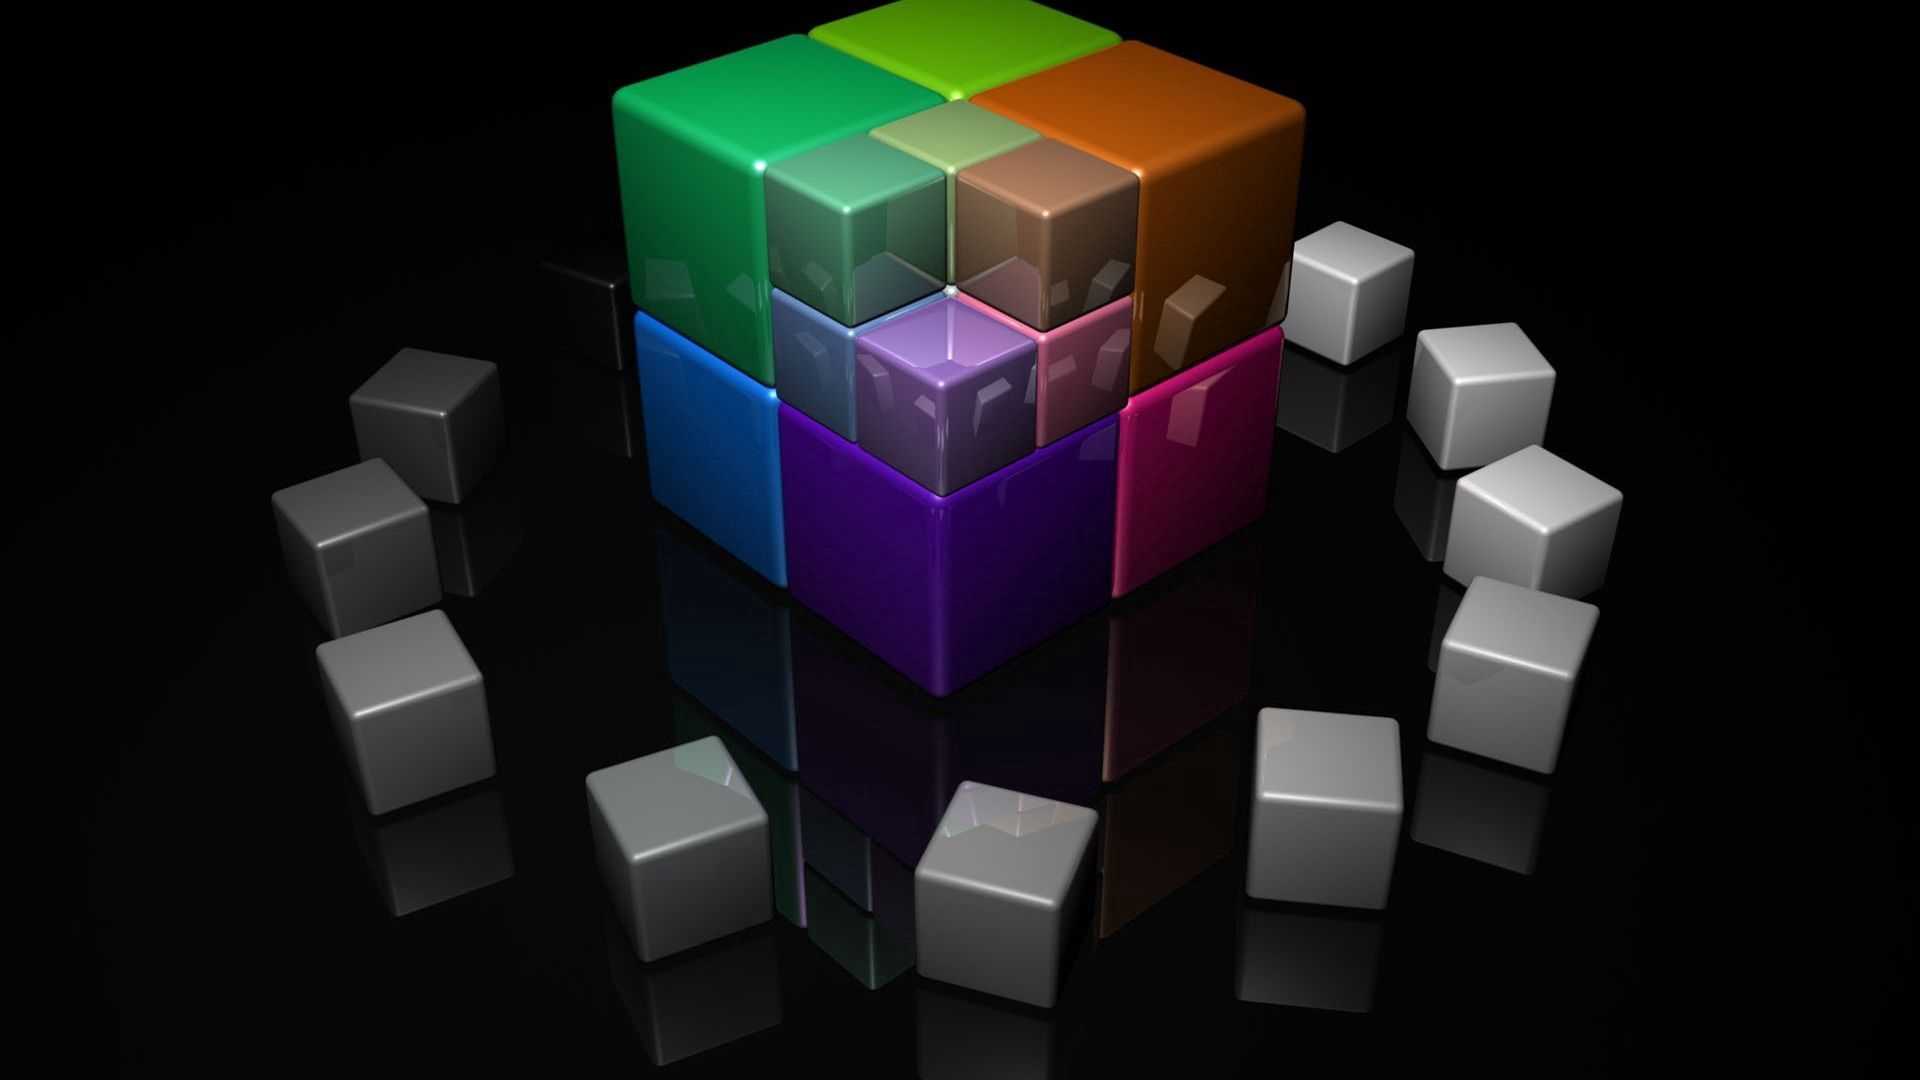 Скачать обои бесплатно Яркий, Разноцветный, Кубики, Куб, 3D картинка на рабочий стол ПК